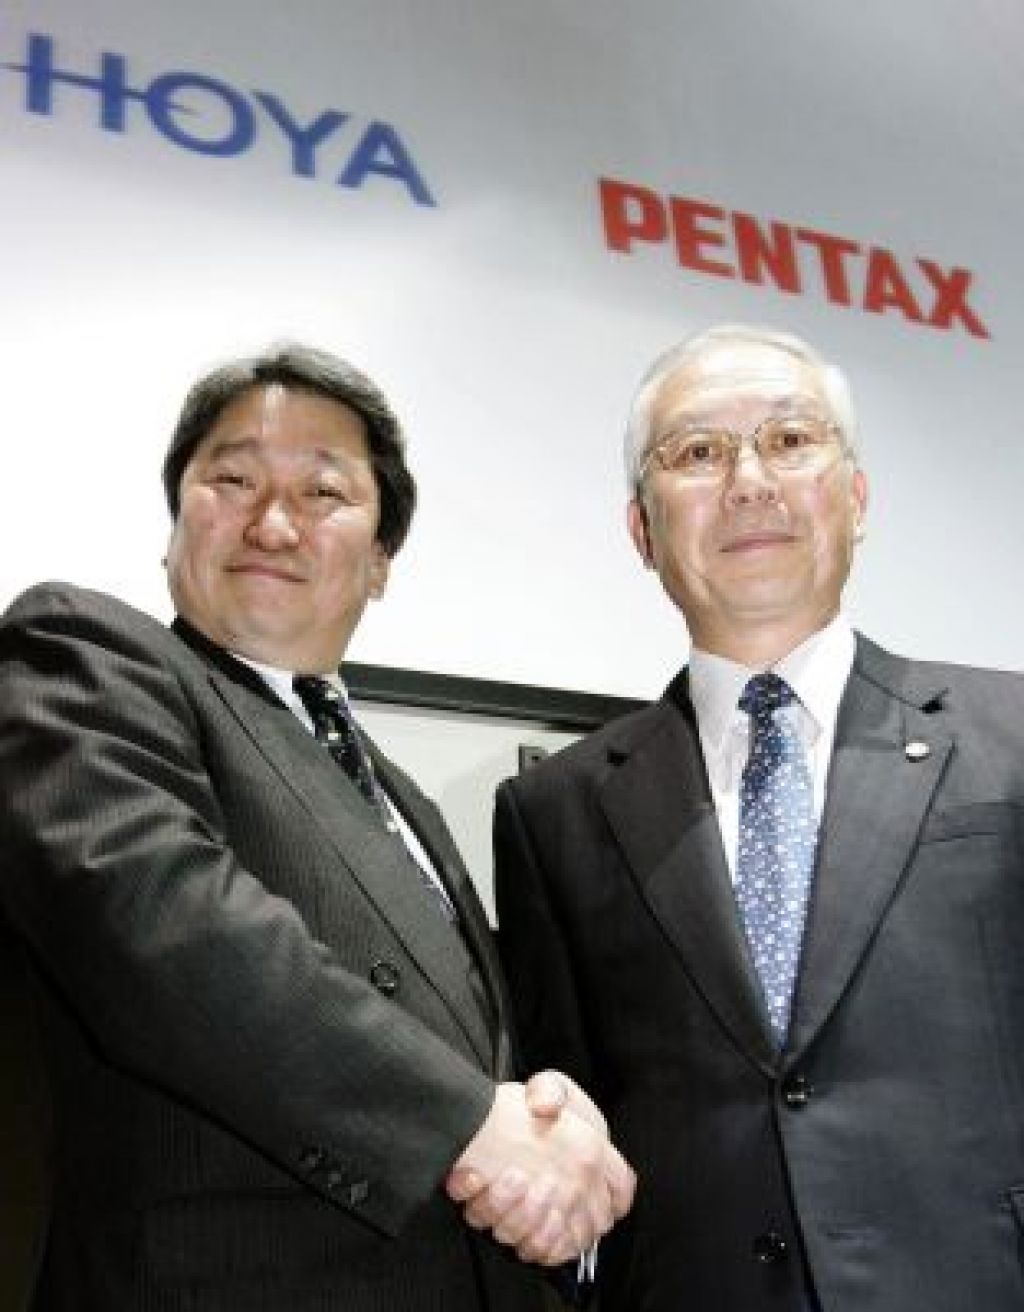 Hoya in Pentax v skupno podjetje